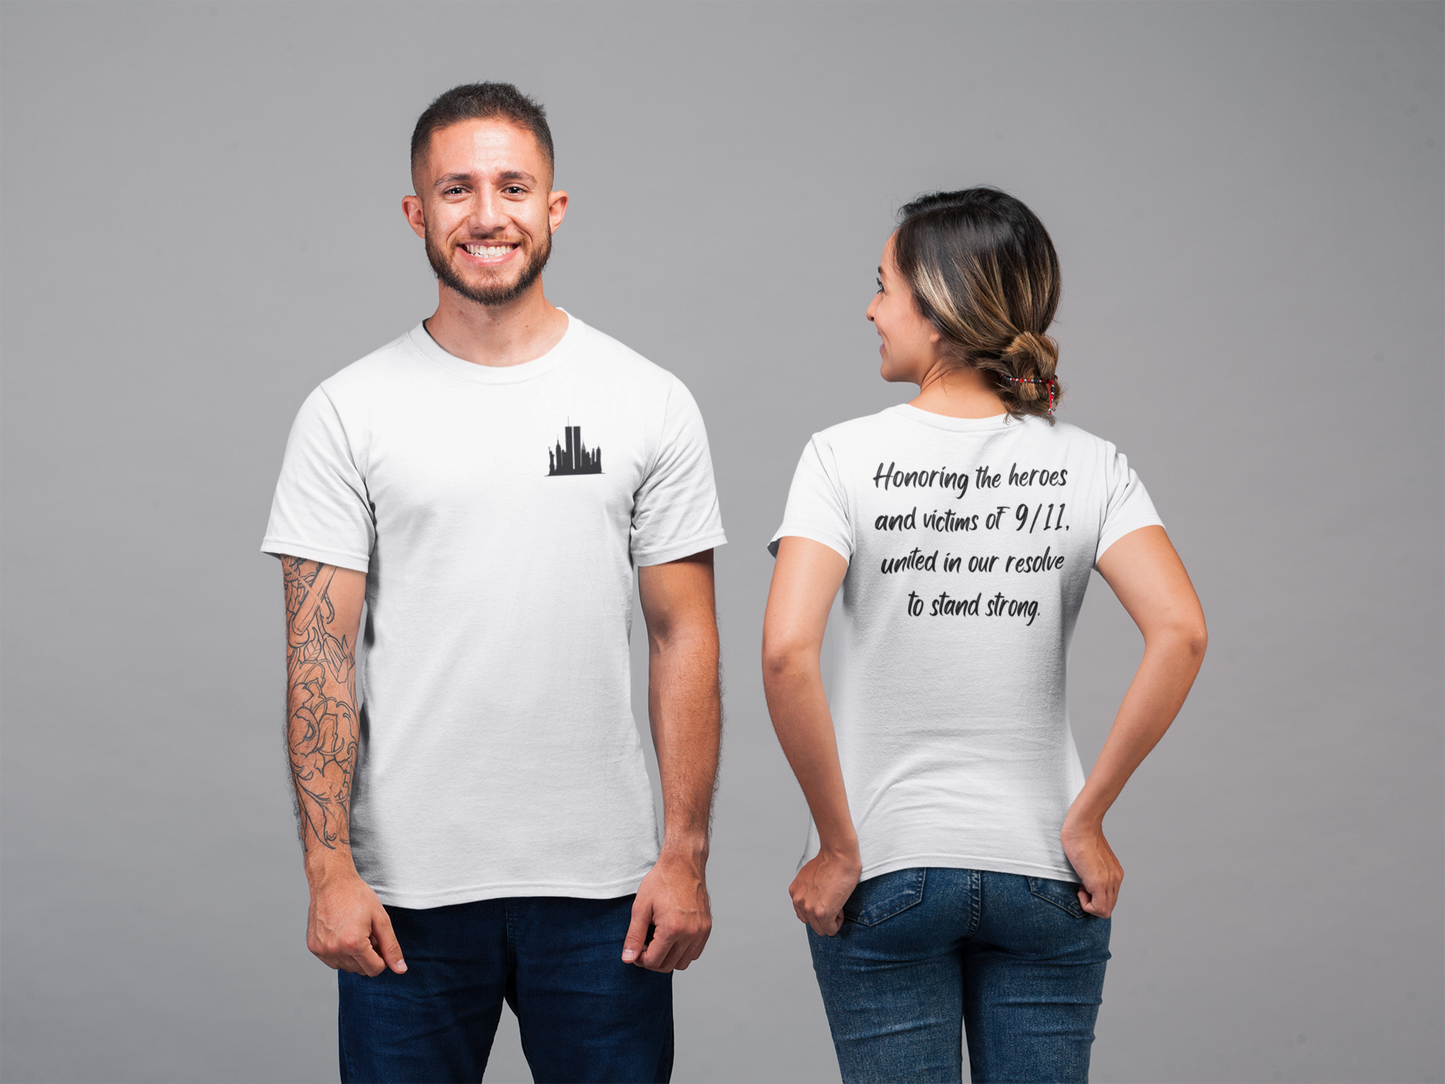 Recuerda siempre, honrando a los héroes - Camiseta unisex para hombre y mujer